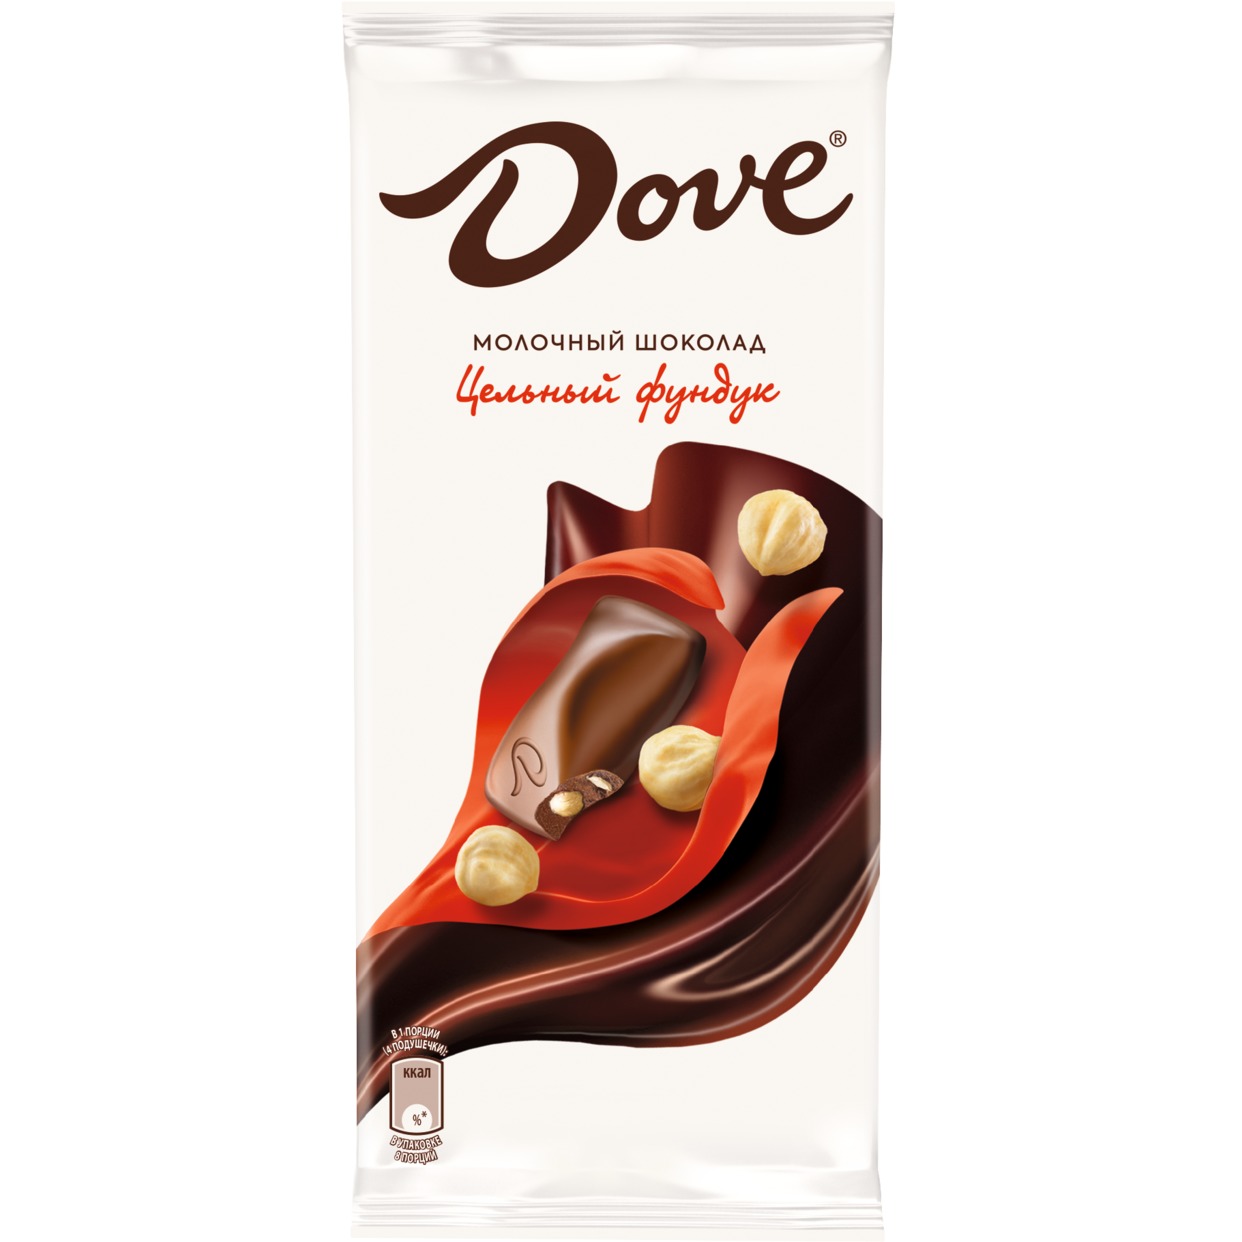 Шоколад Dove Молочный с Цельным Фундуком 90г